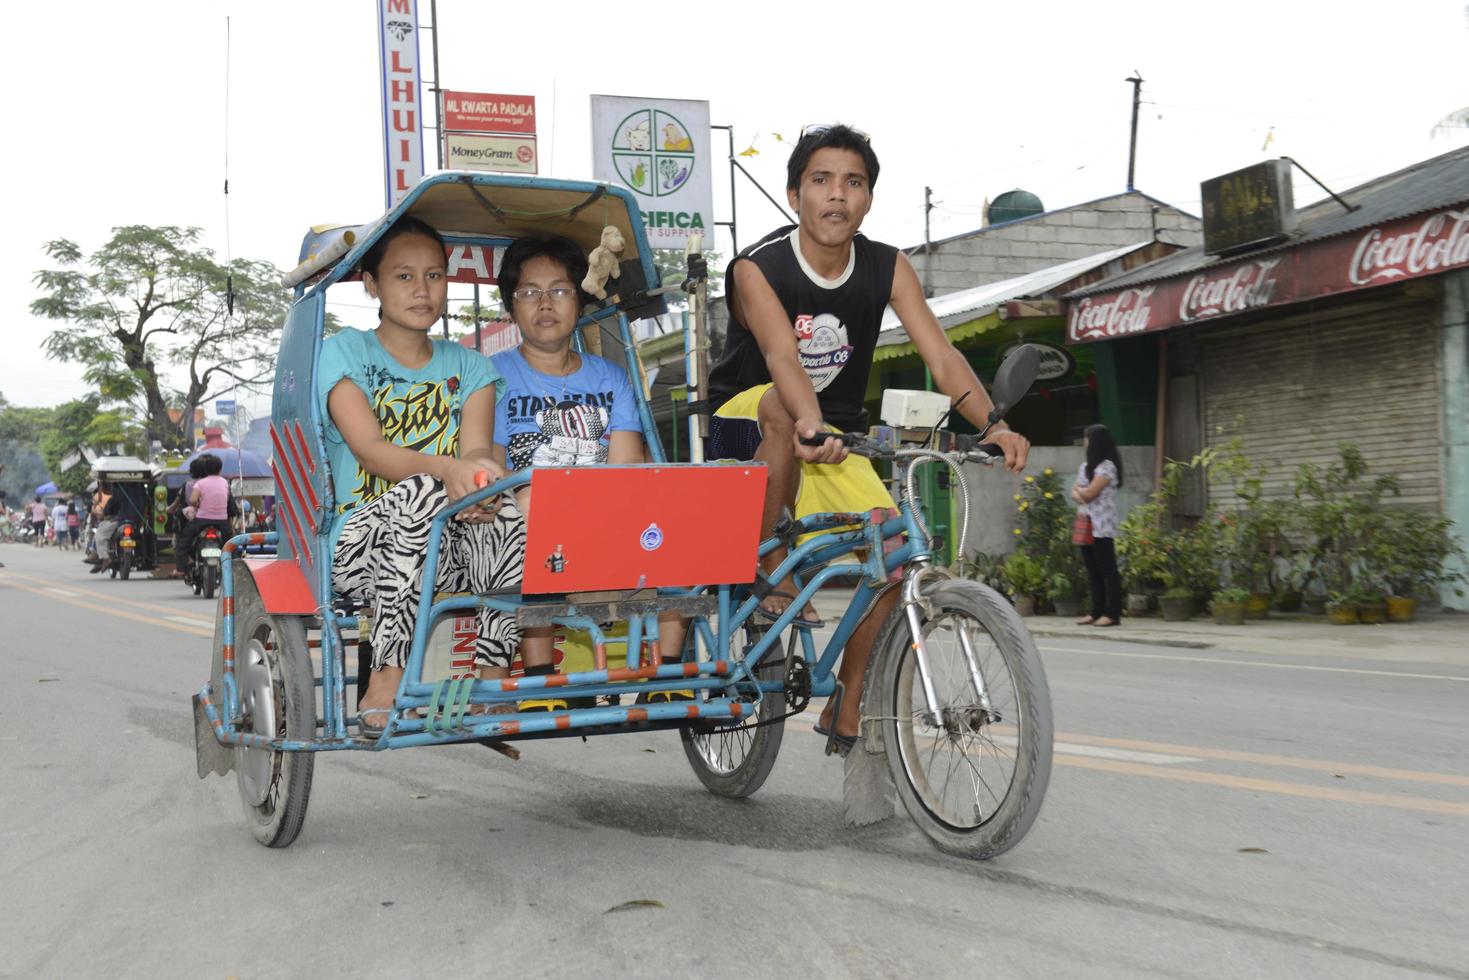 cebu - philippines - 7 janvier 2013 - les gens vont au marché local photo